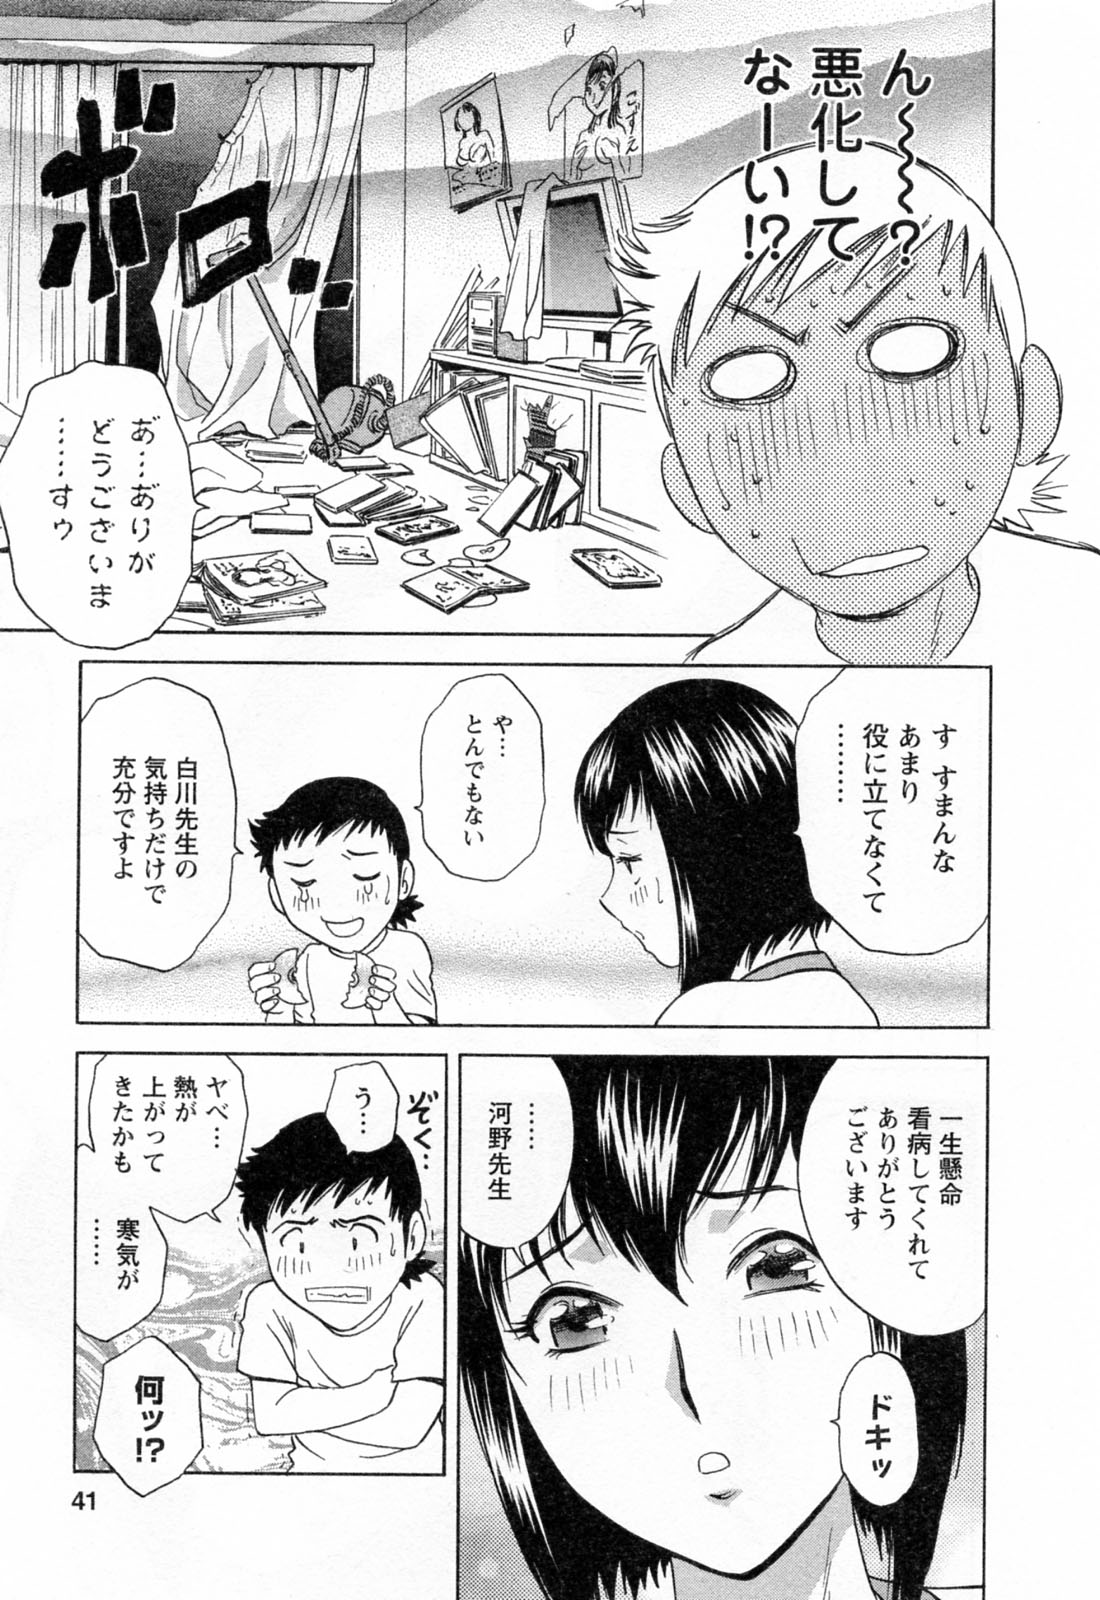 [Hidemaru] Mo-Retsu! Boin Sensei (Boing Boing Teacher) Vol.4 page 43 full